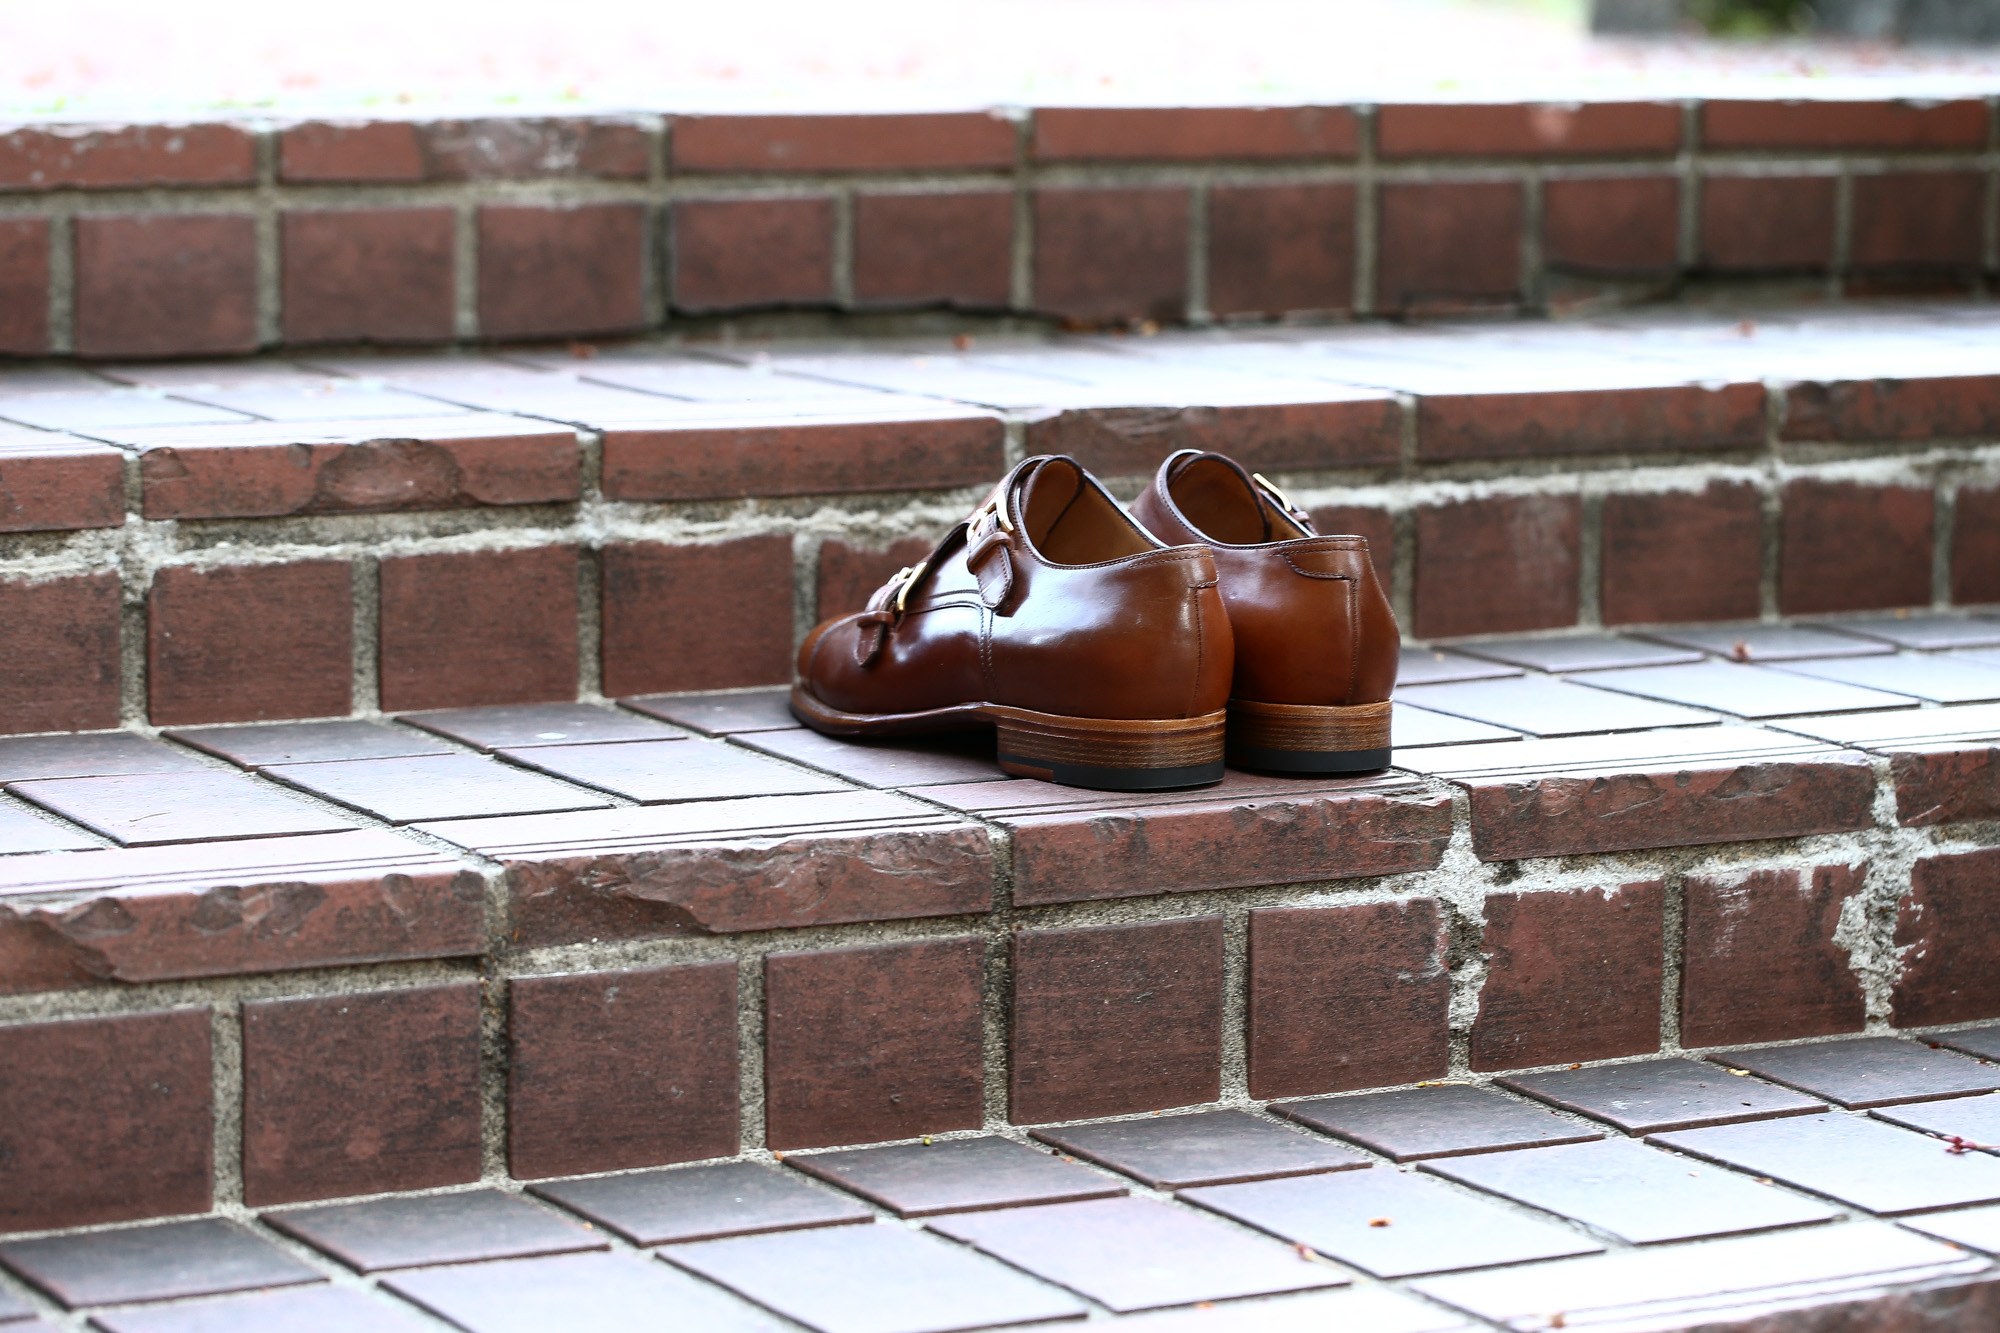 ENZO BONAFE (エンツォボナフェ) ART.EB-27 Double Monk Strap Shoes Horween Shell Cordovan Leather ホーウィン社シェルコードバンレザー ダブルモンクストラップシューズ BOURBON (バーボン) made in italy (イタリア製) 2018 春夏新作 enzobonafe ダブルモンク ドレス ボナフェ レザーシューズ 愛知 名古屋 Alto e Diritto アルト エ デリット